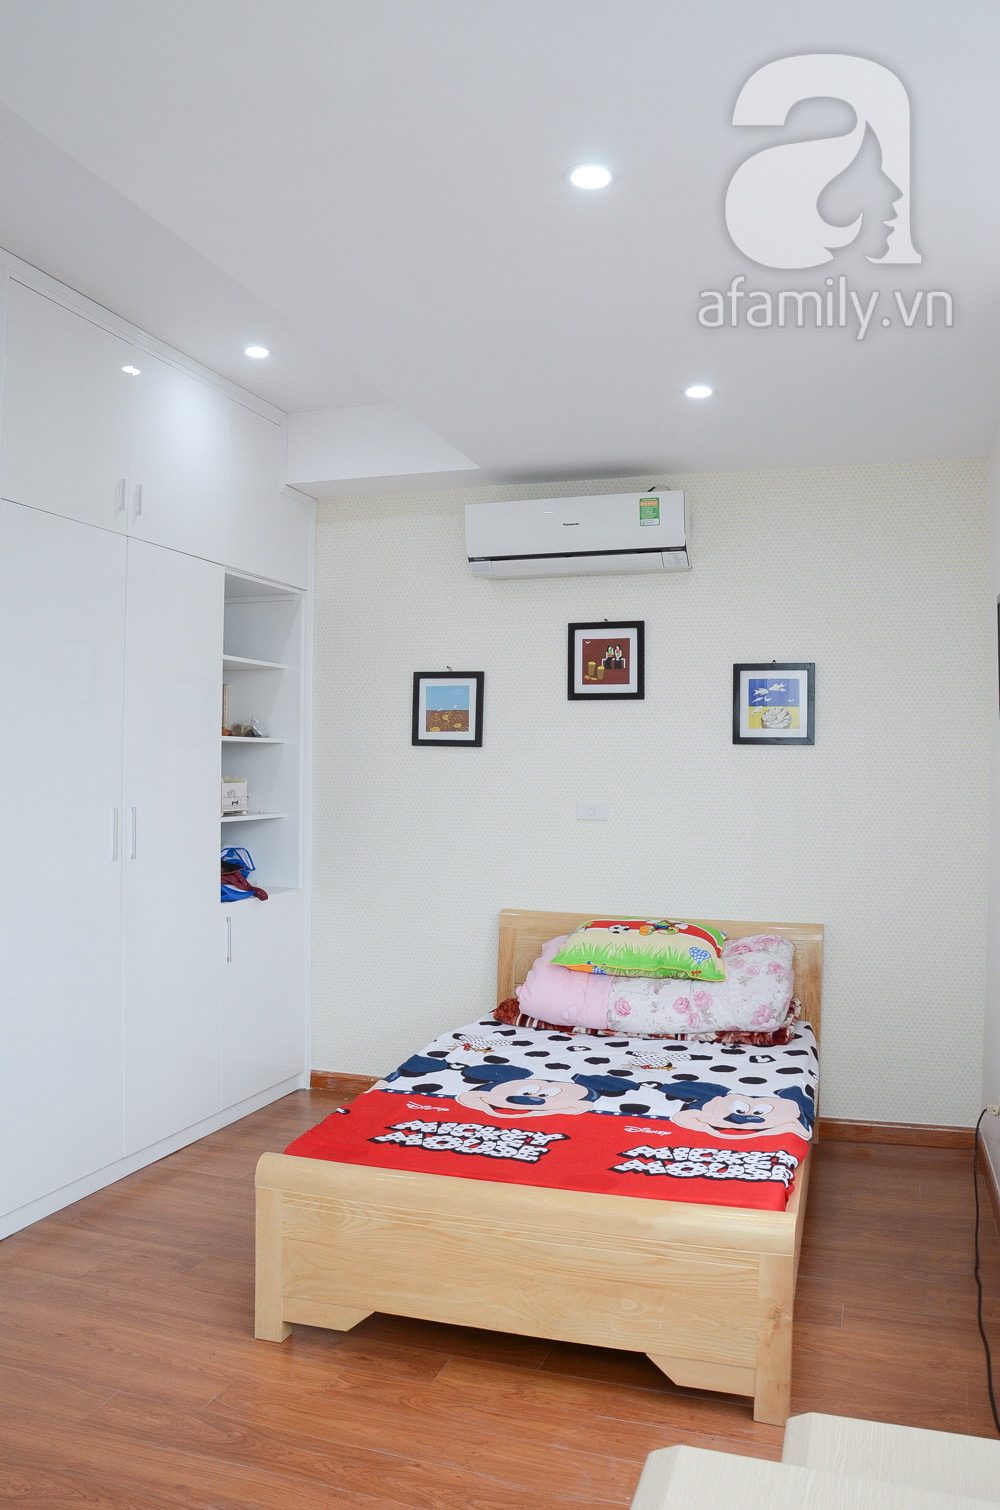 Phòng ngủ gọn gàng với cách bài trí nội thất đơn giản.